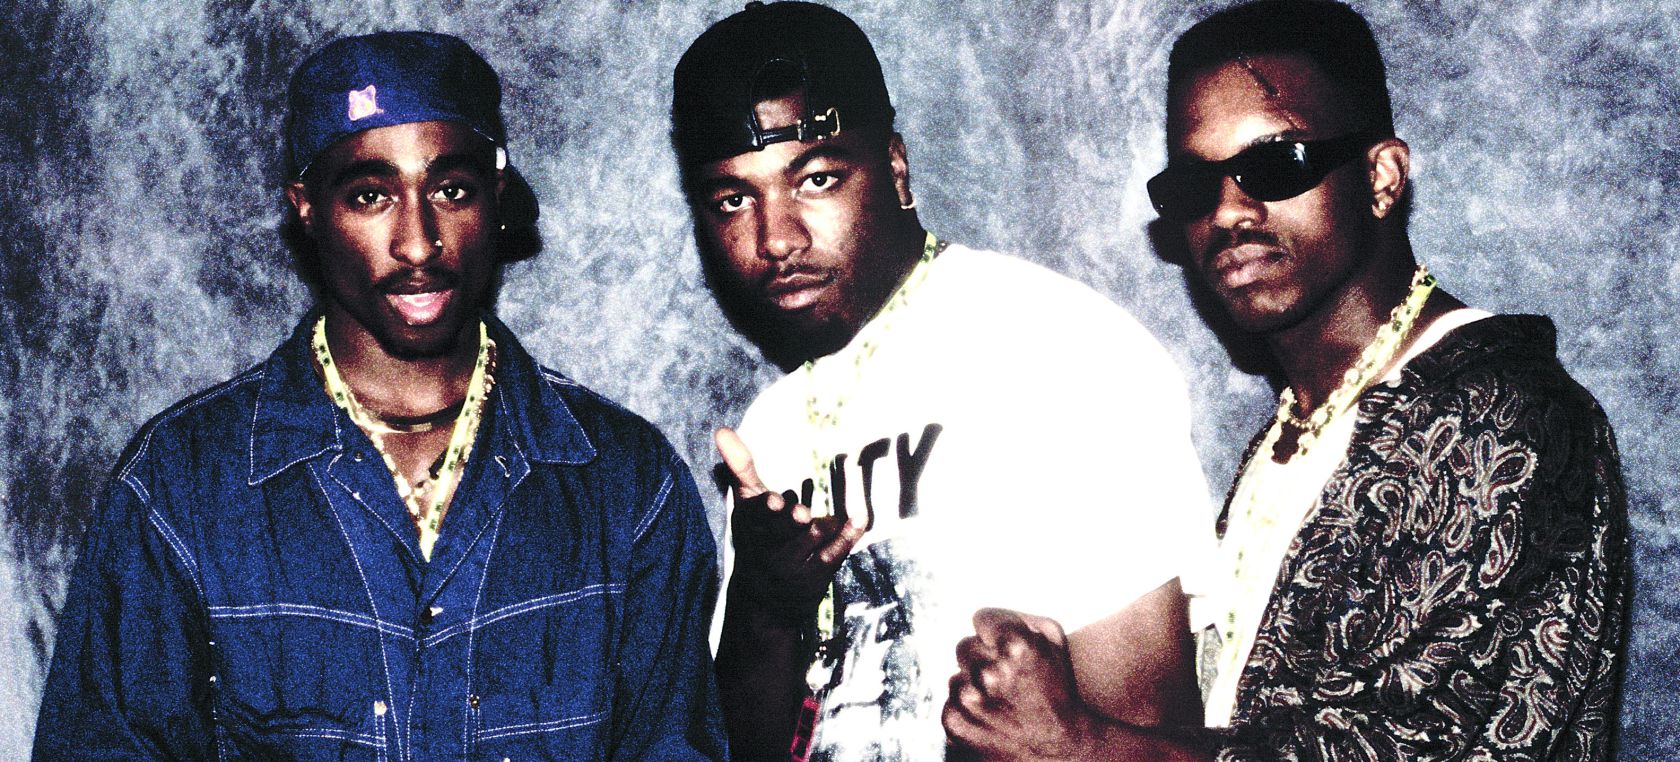 Breve historia del rap: origen, significado y evolución de un estilo de música que lo cambió todo